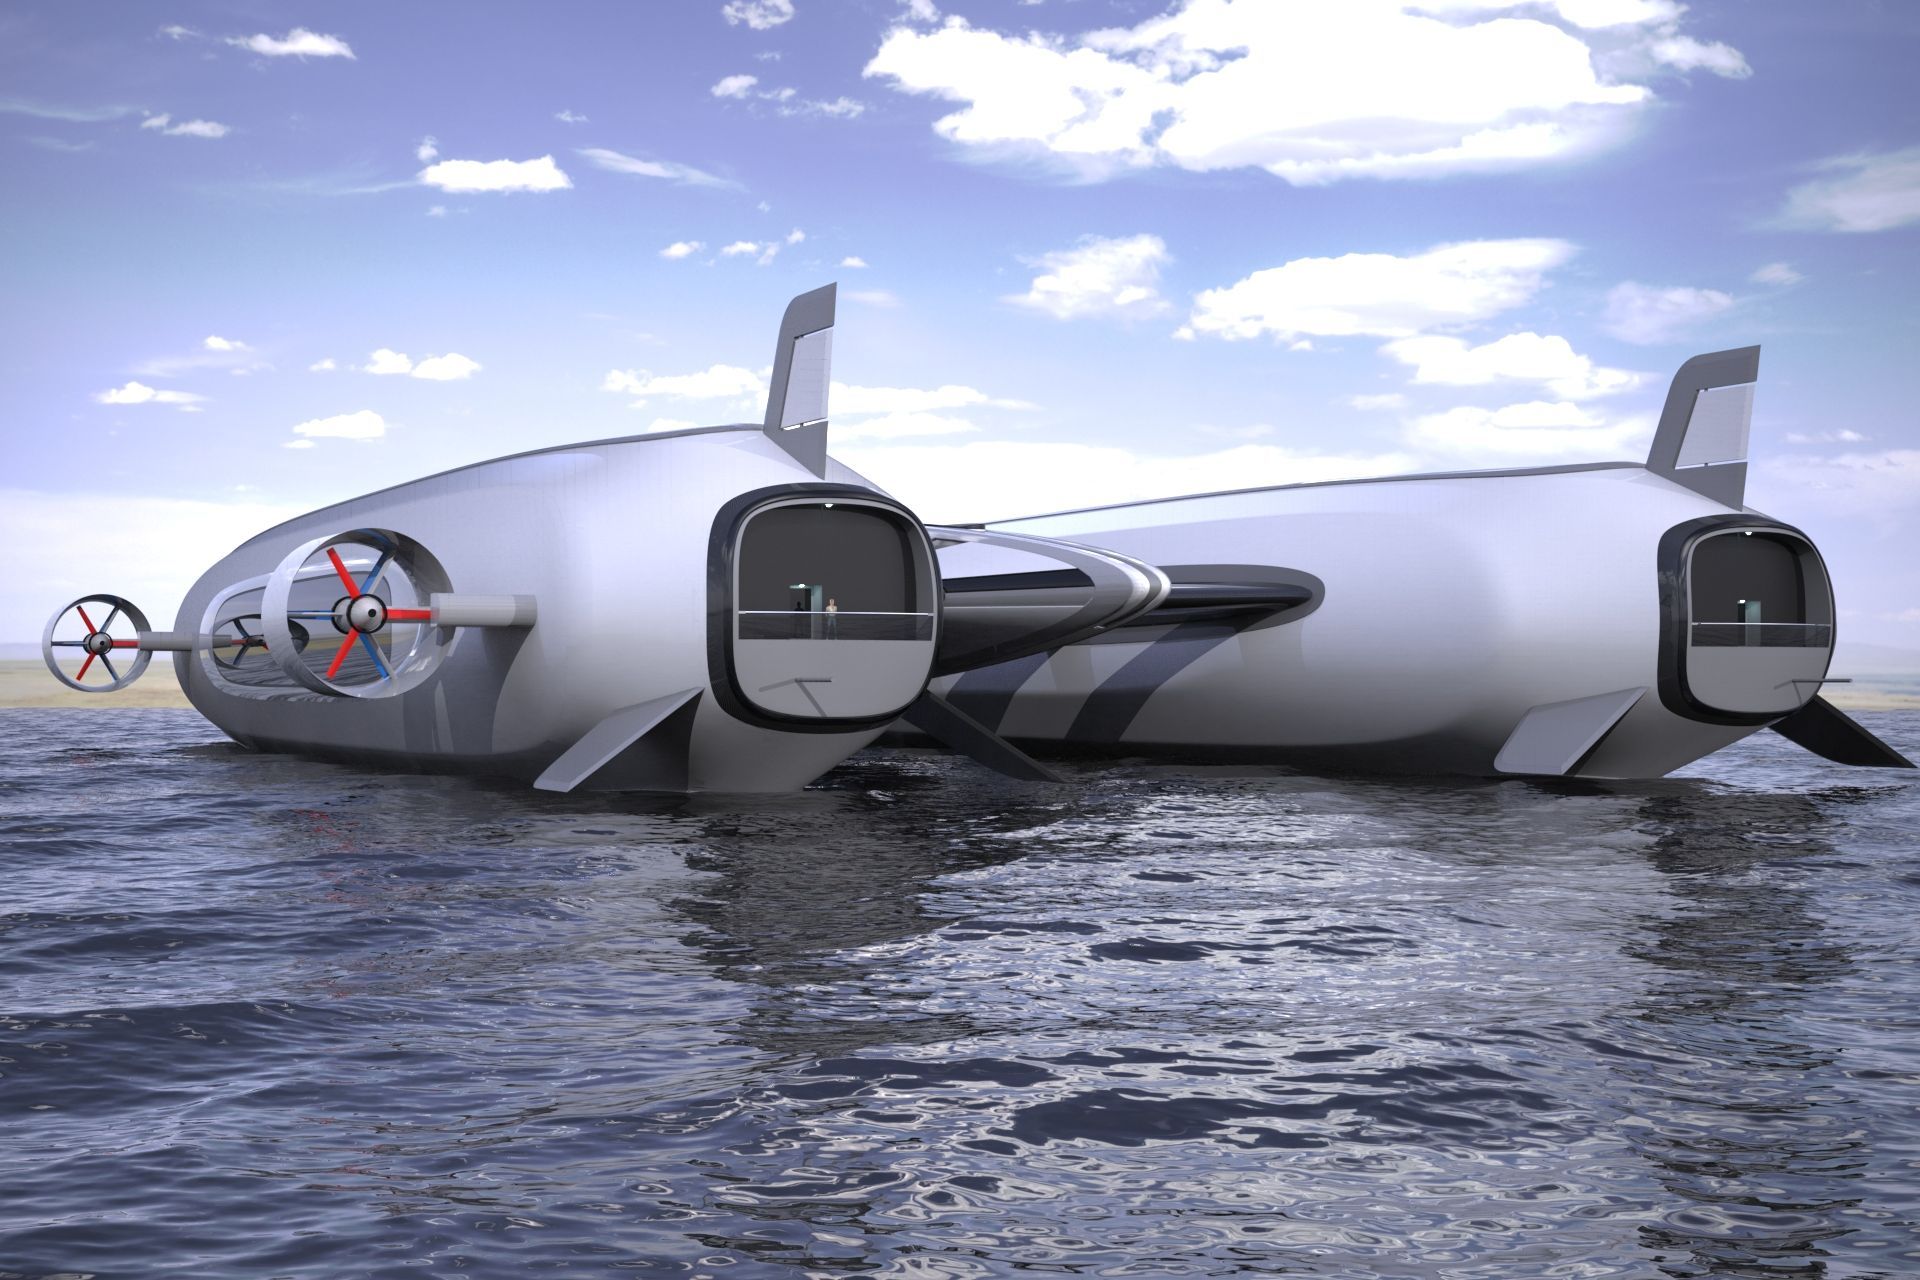 Концепция «Небесная яхта», разработанная студией Lazzarini Design для устойчивой воздушной и водной мобильности.